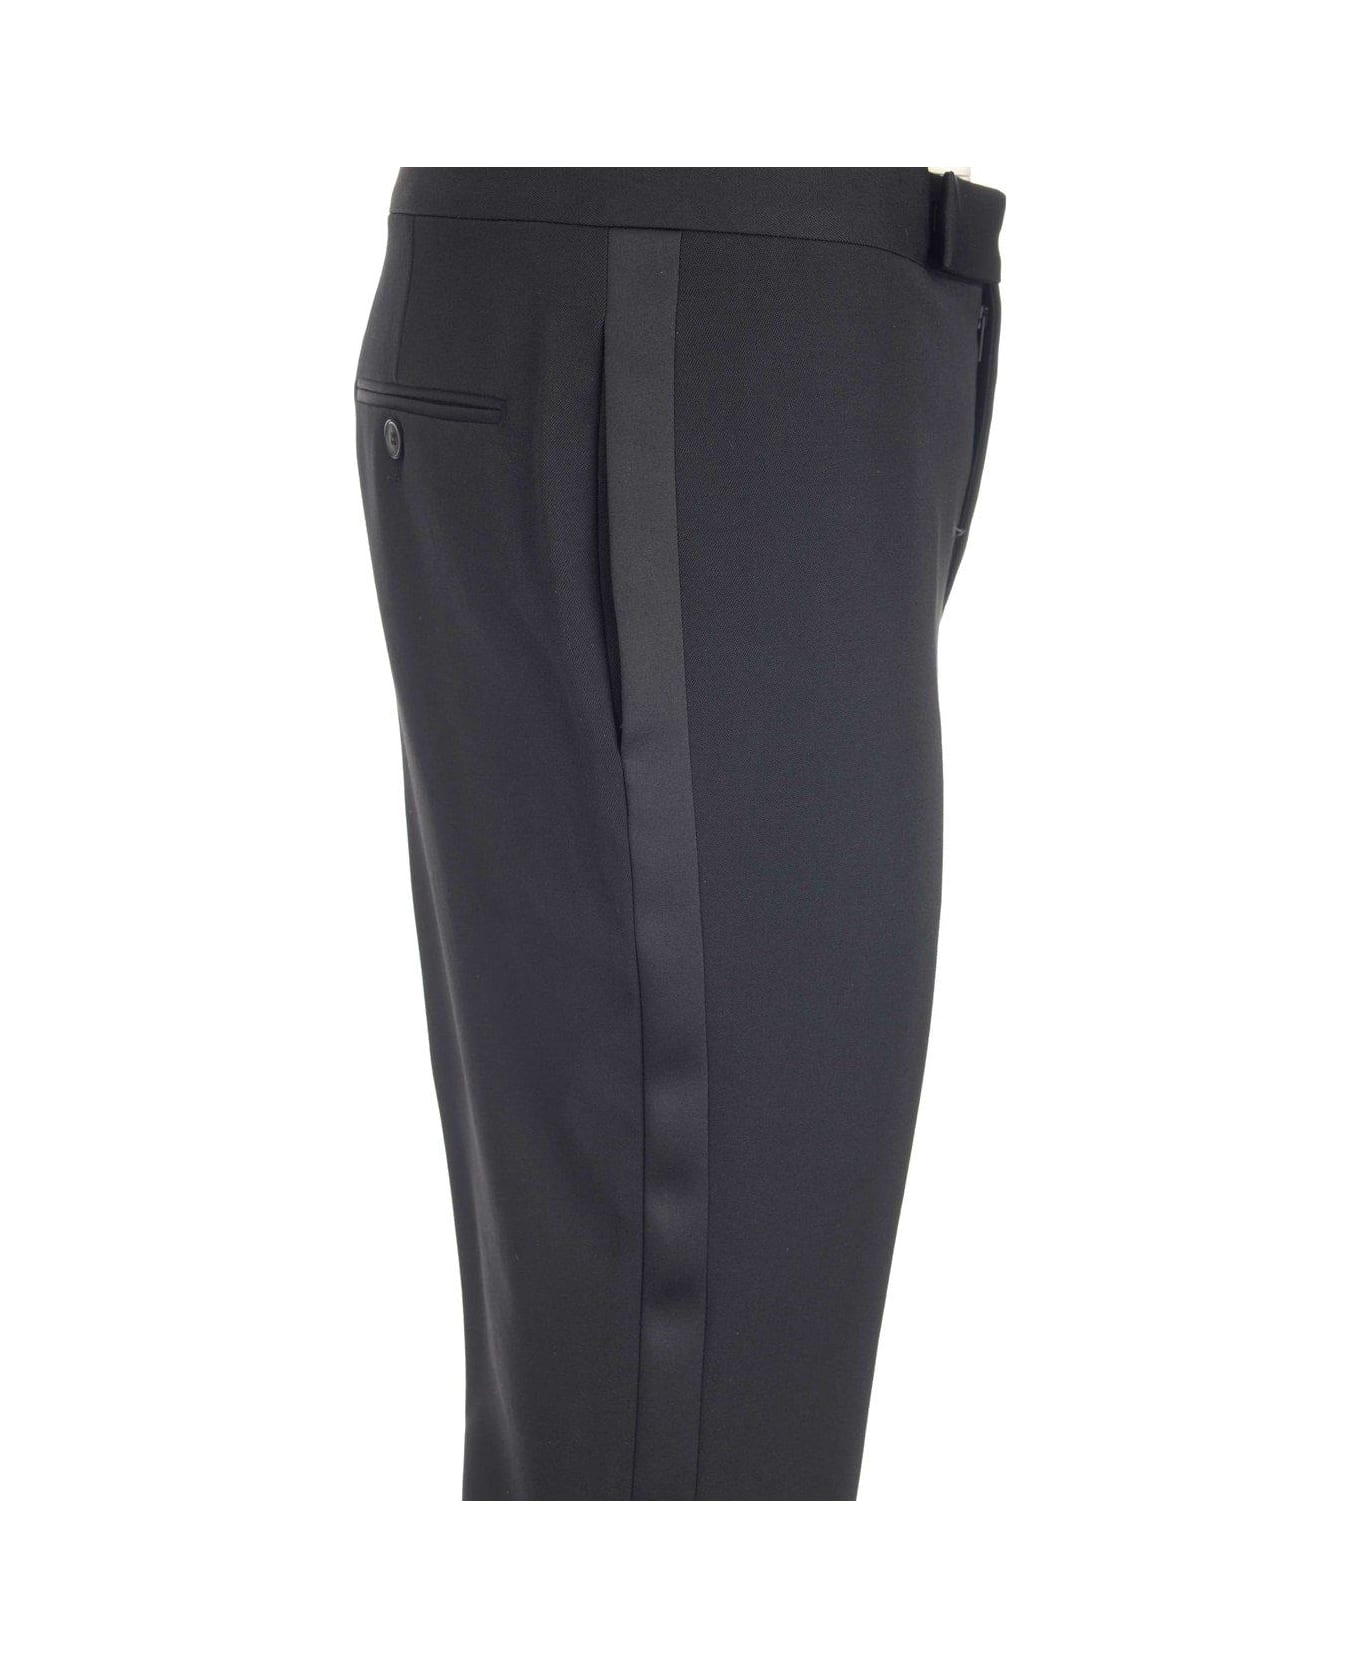 Saint Laurent Slim-fit Tailored Trousers - 1000